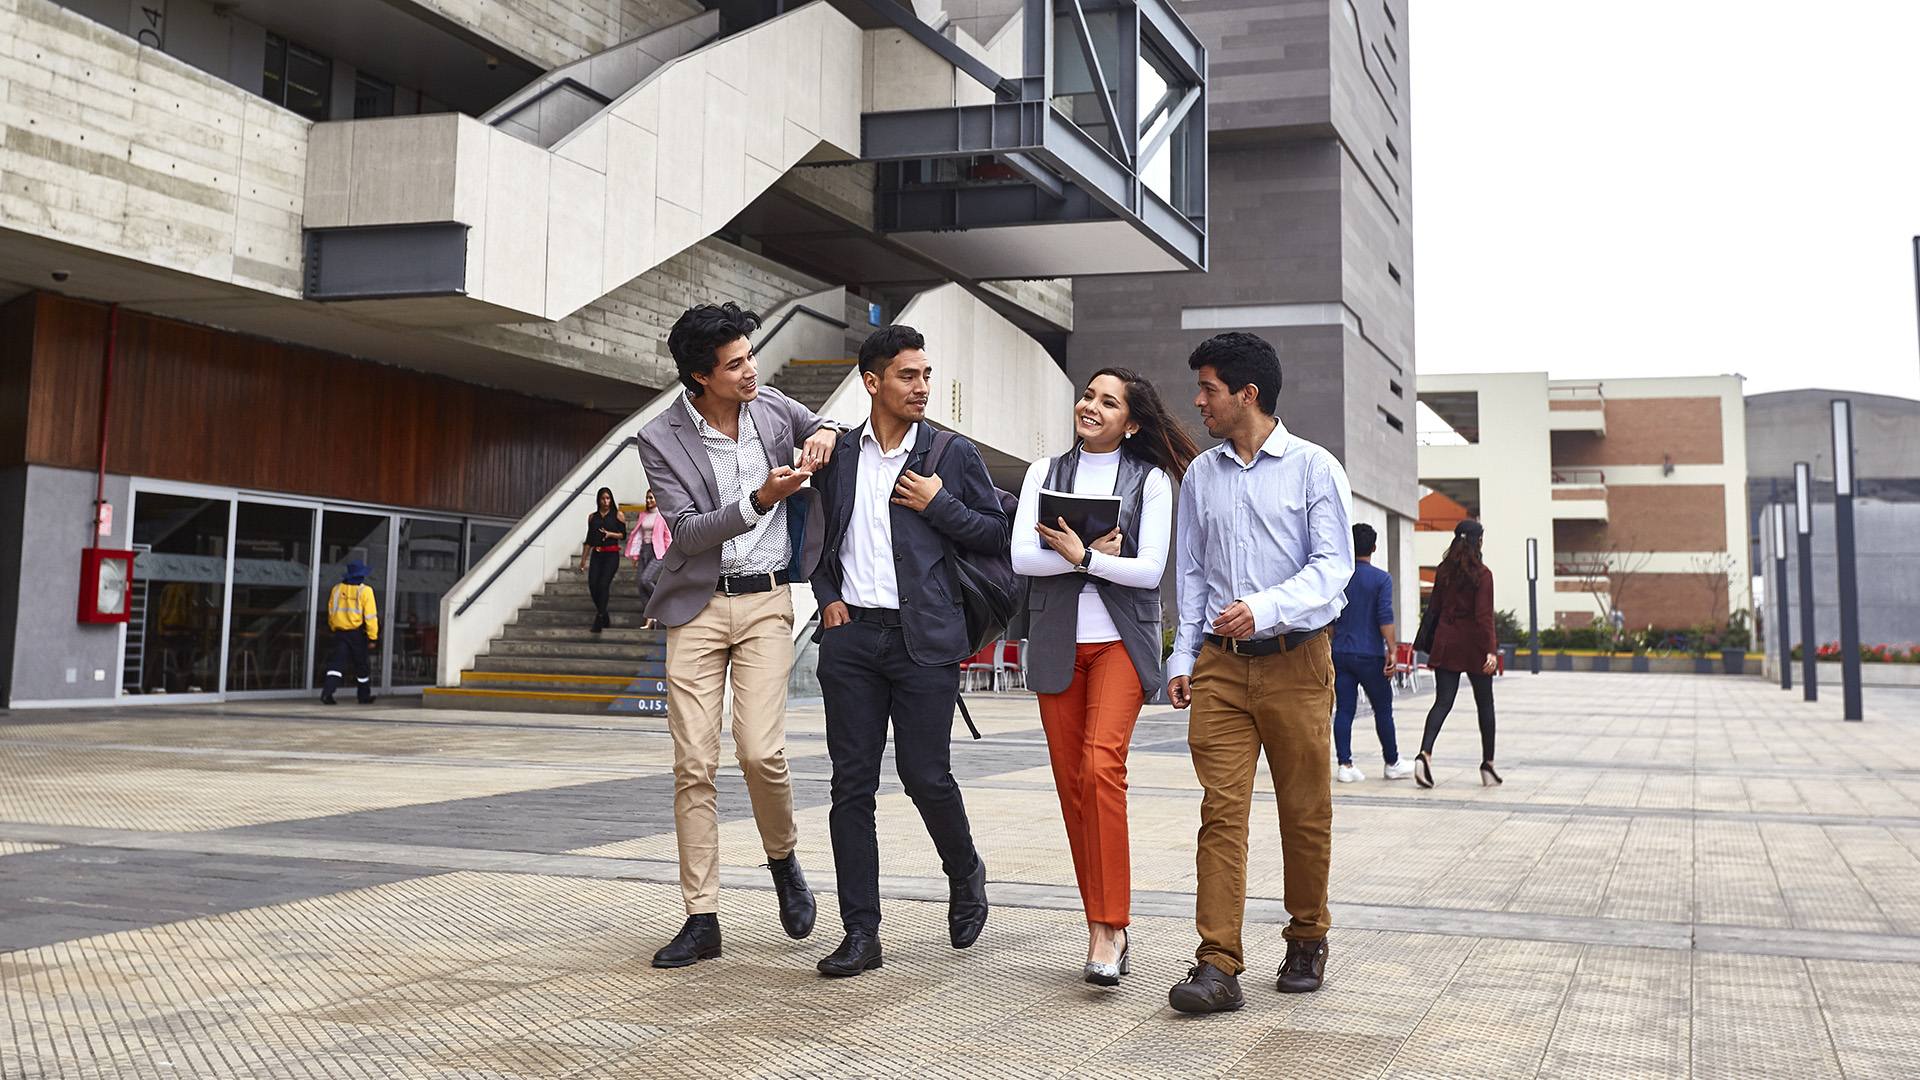 estudiantes de maestrias y doctorados de la escuela de posgrado pucp: cuatro estudiantes jóvenes de aproximadamente 30 años caminnado delante de un edificio moderno.